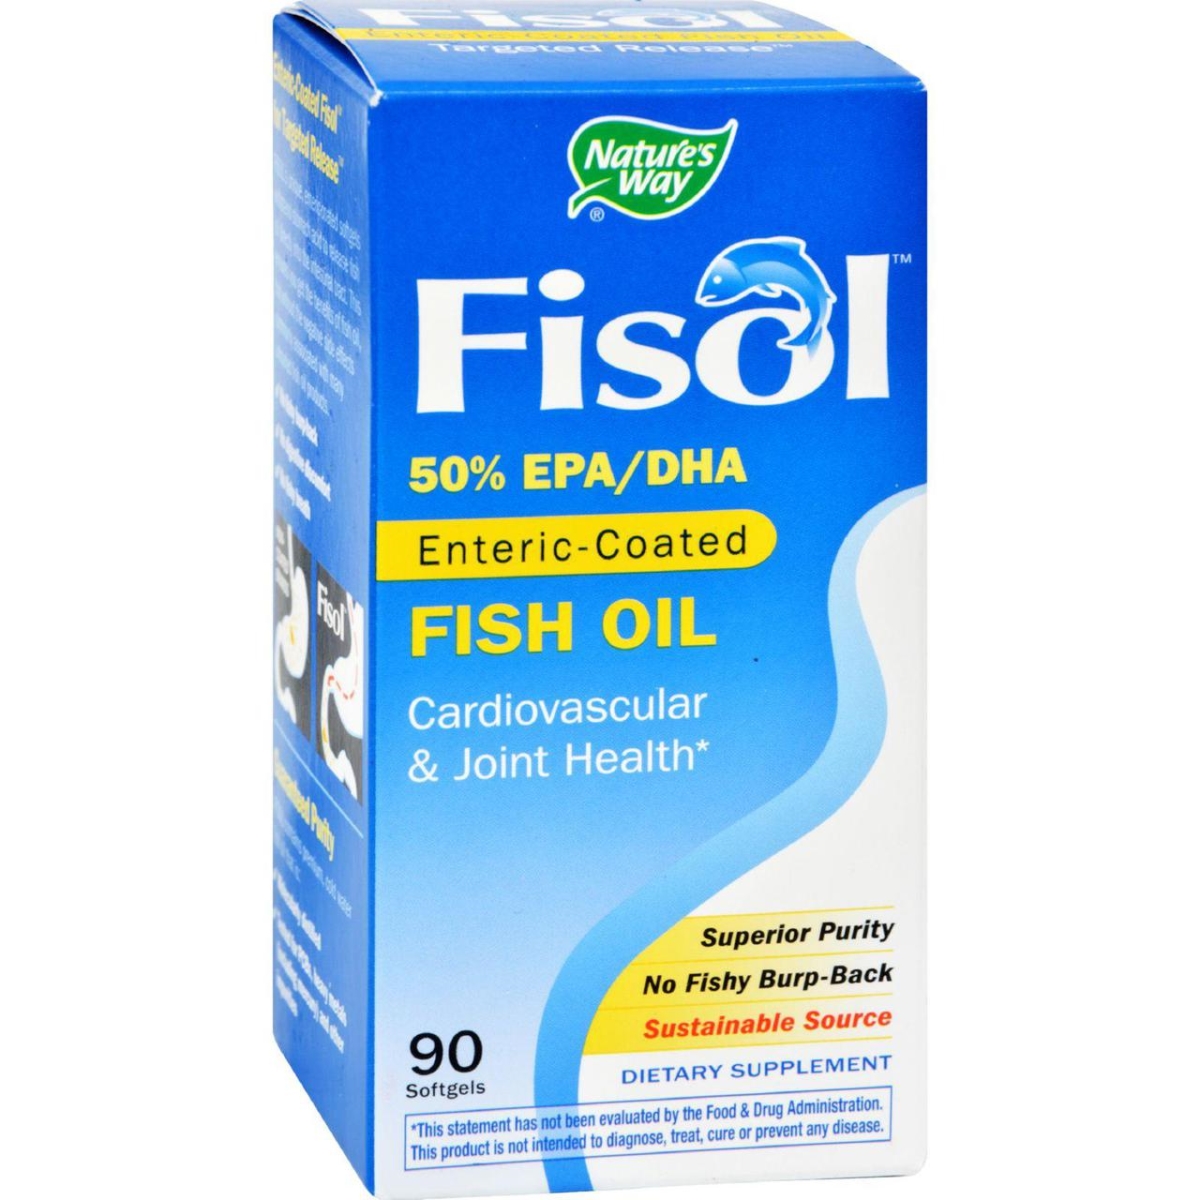 Hg0967414 Fisol Fish Oil - 90 Softgels